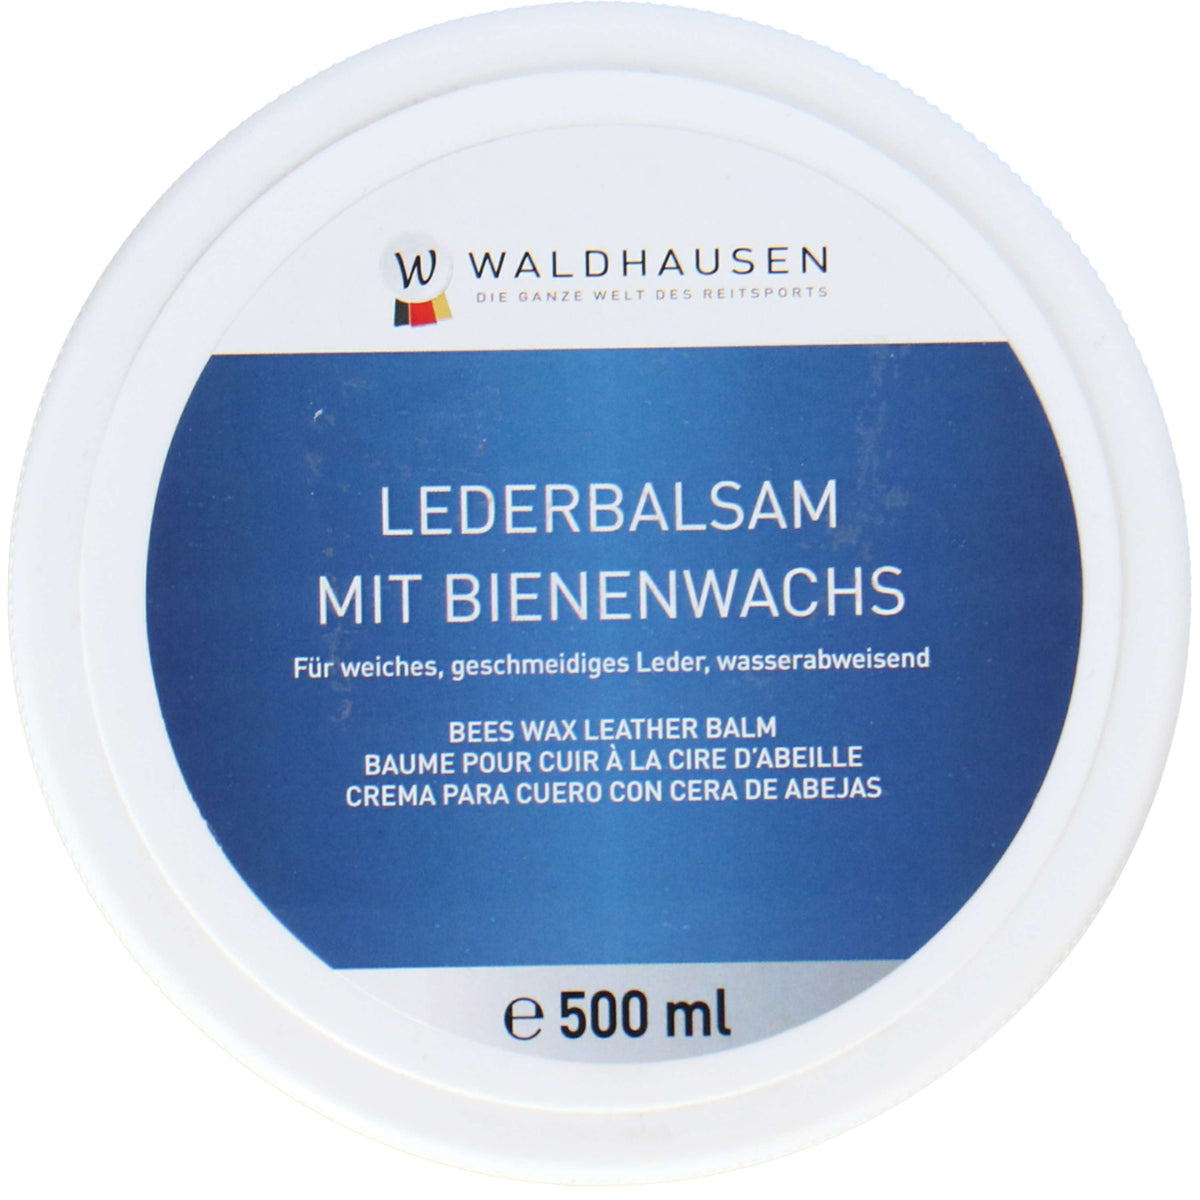 Waldhausen Lederbalsam Bienenwachs